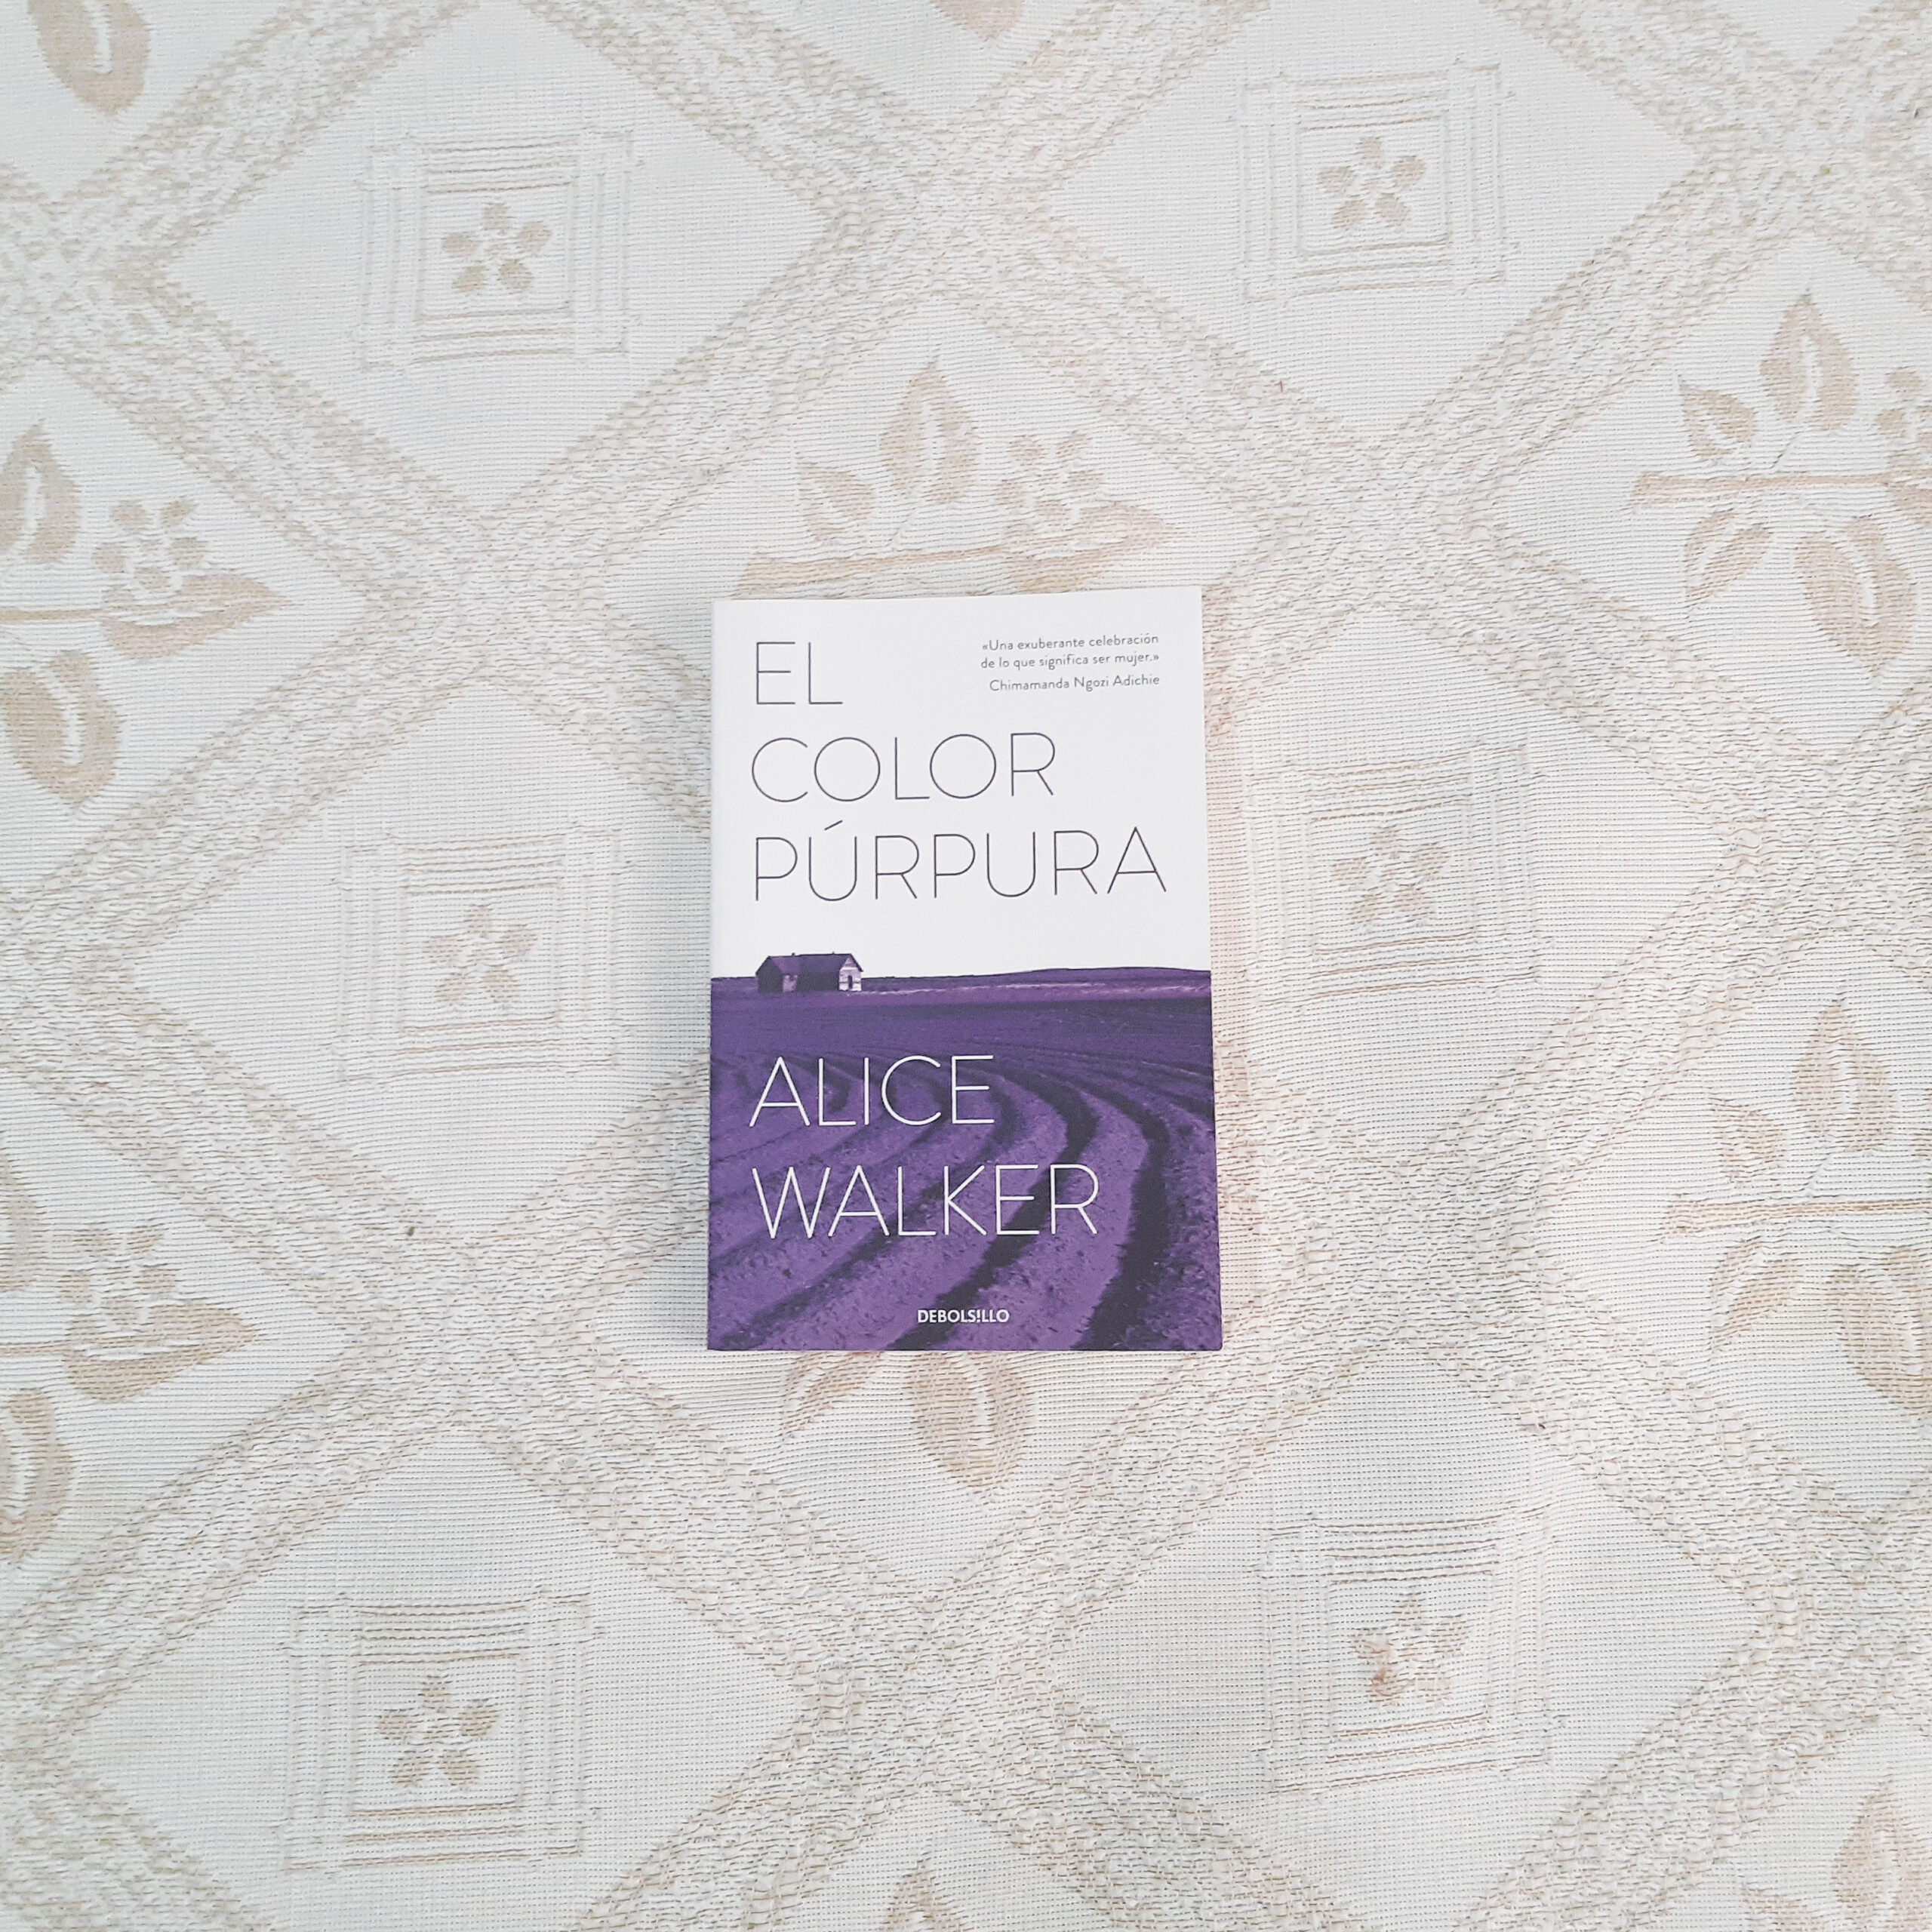 El-color-purpura-scaled Libros recomendados